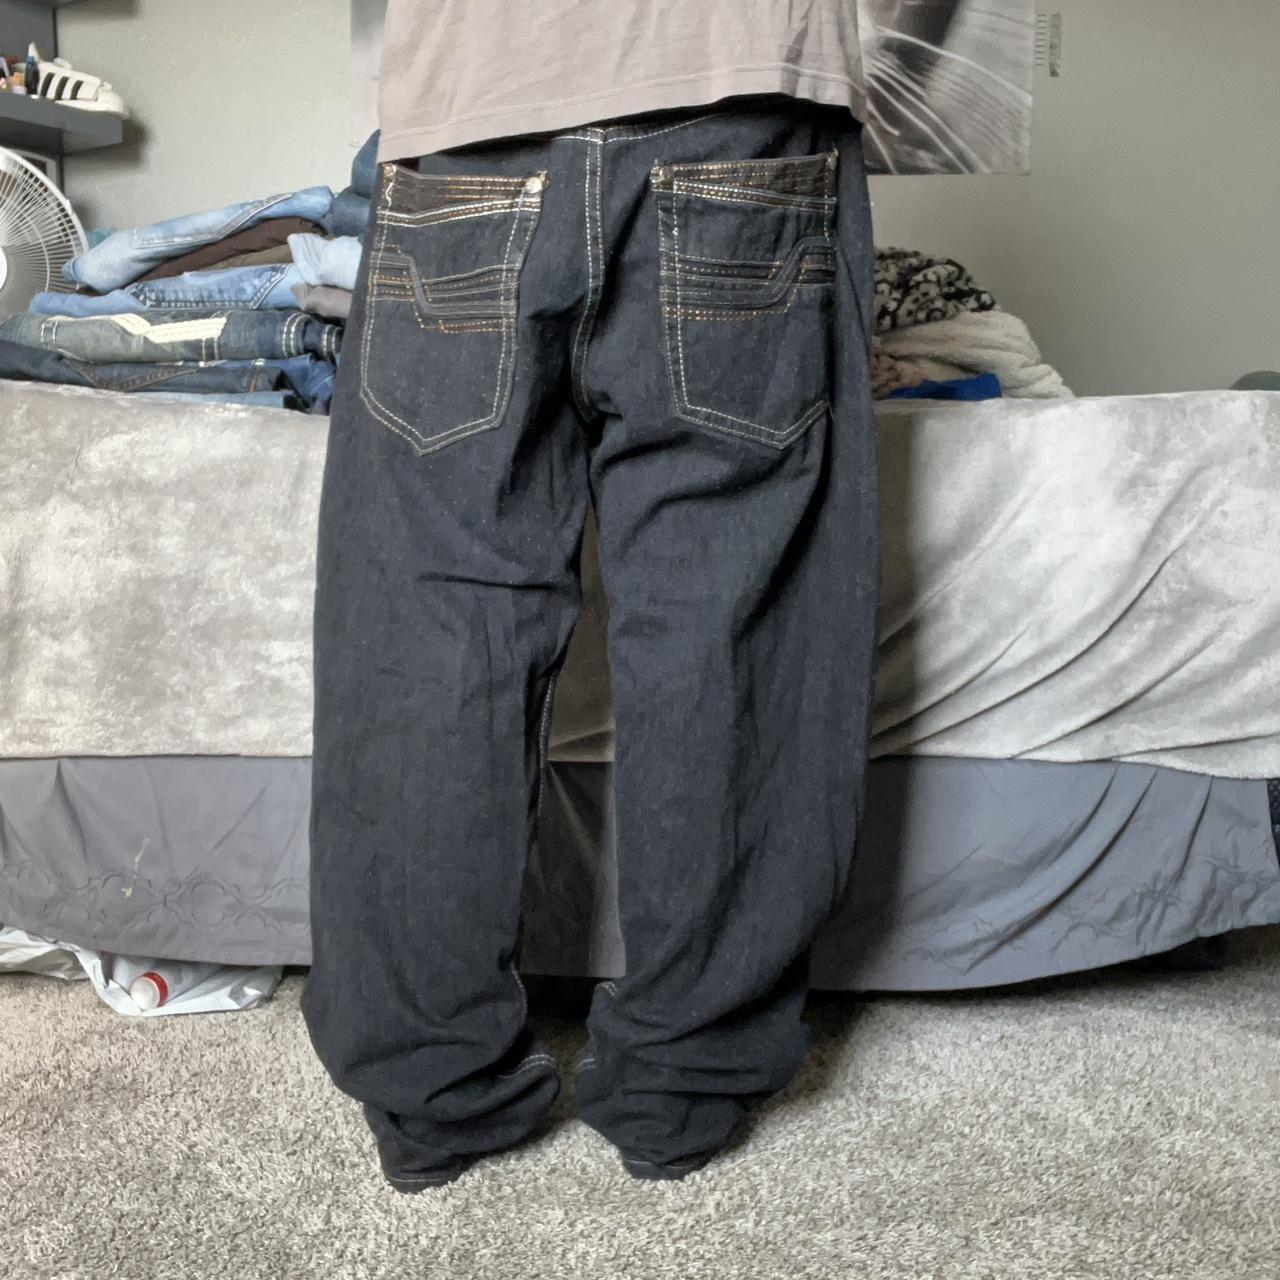 Insane pair of y2k old skool jeans, dm me with any... - Depop